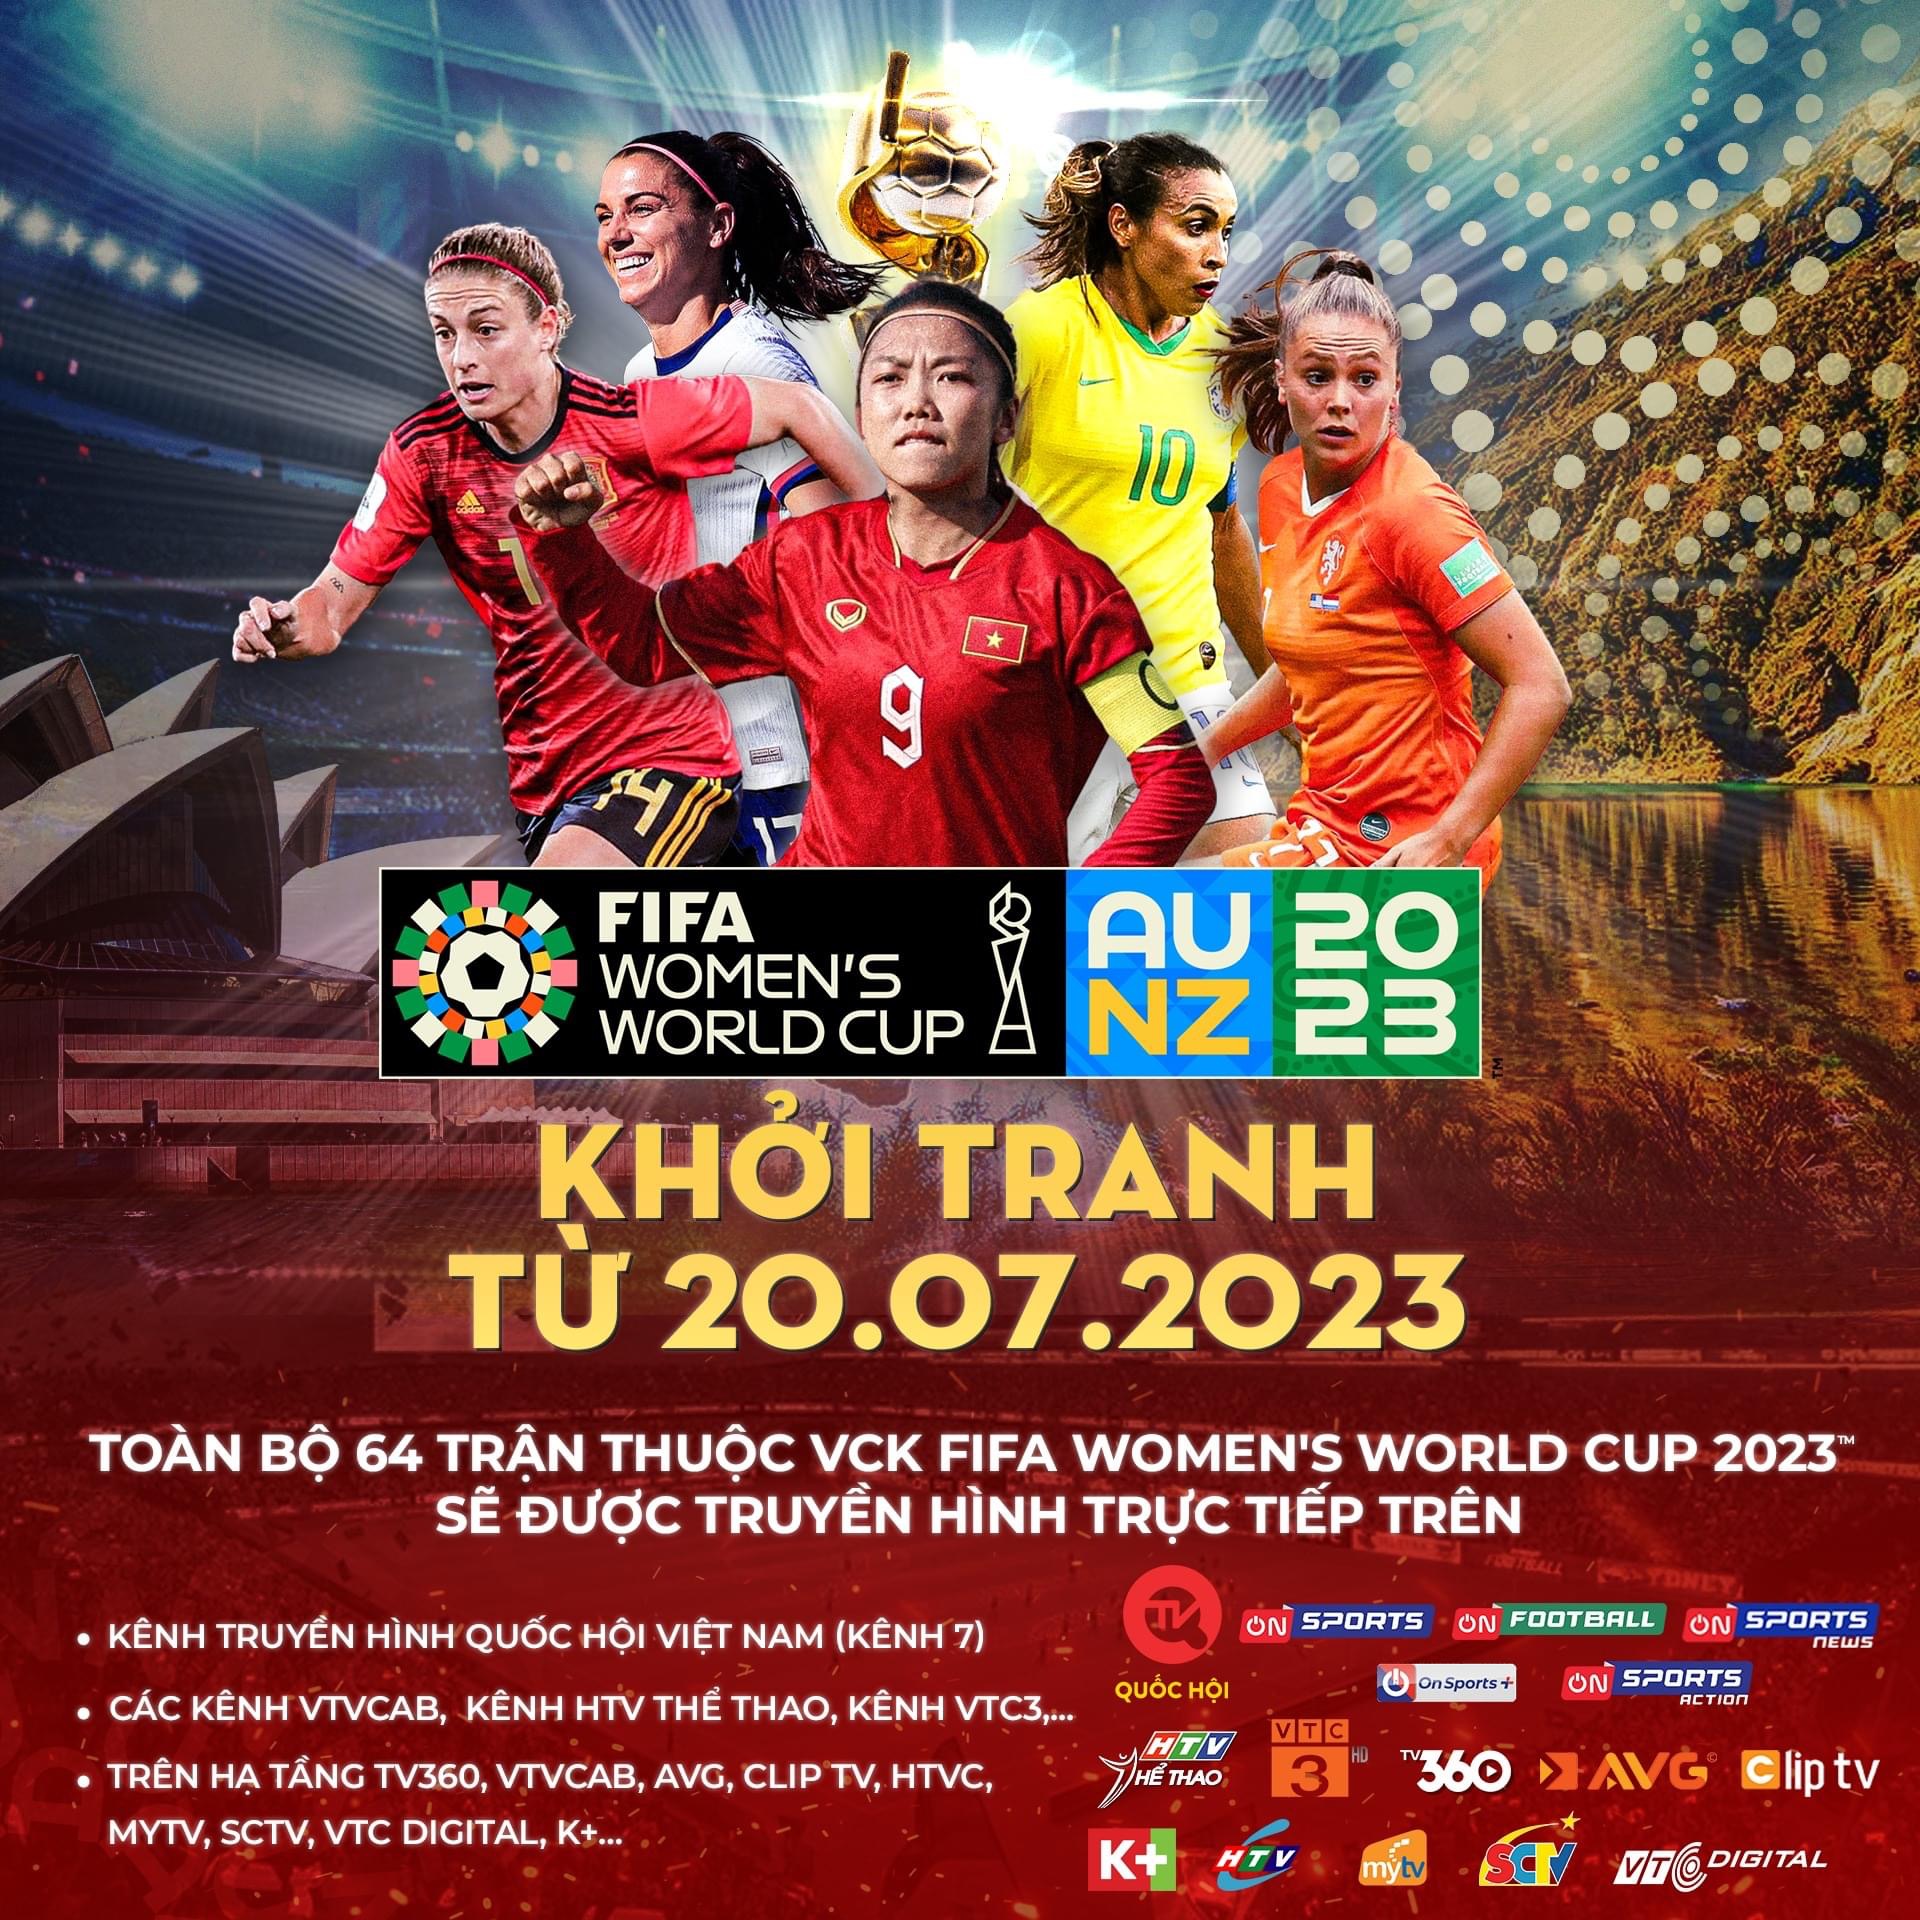 64 trận đấu của VCK FIFA World Cup nữ 2023 được truyền hình trực tiếp trên K+